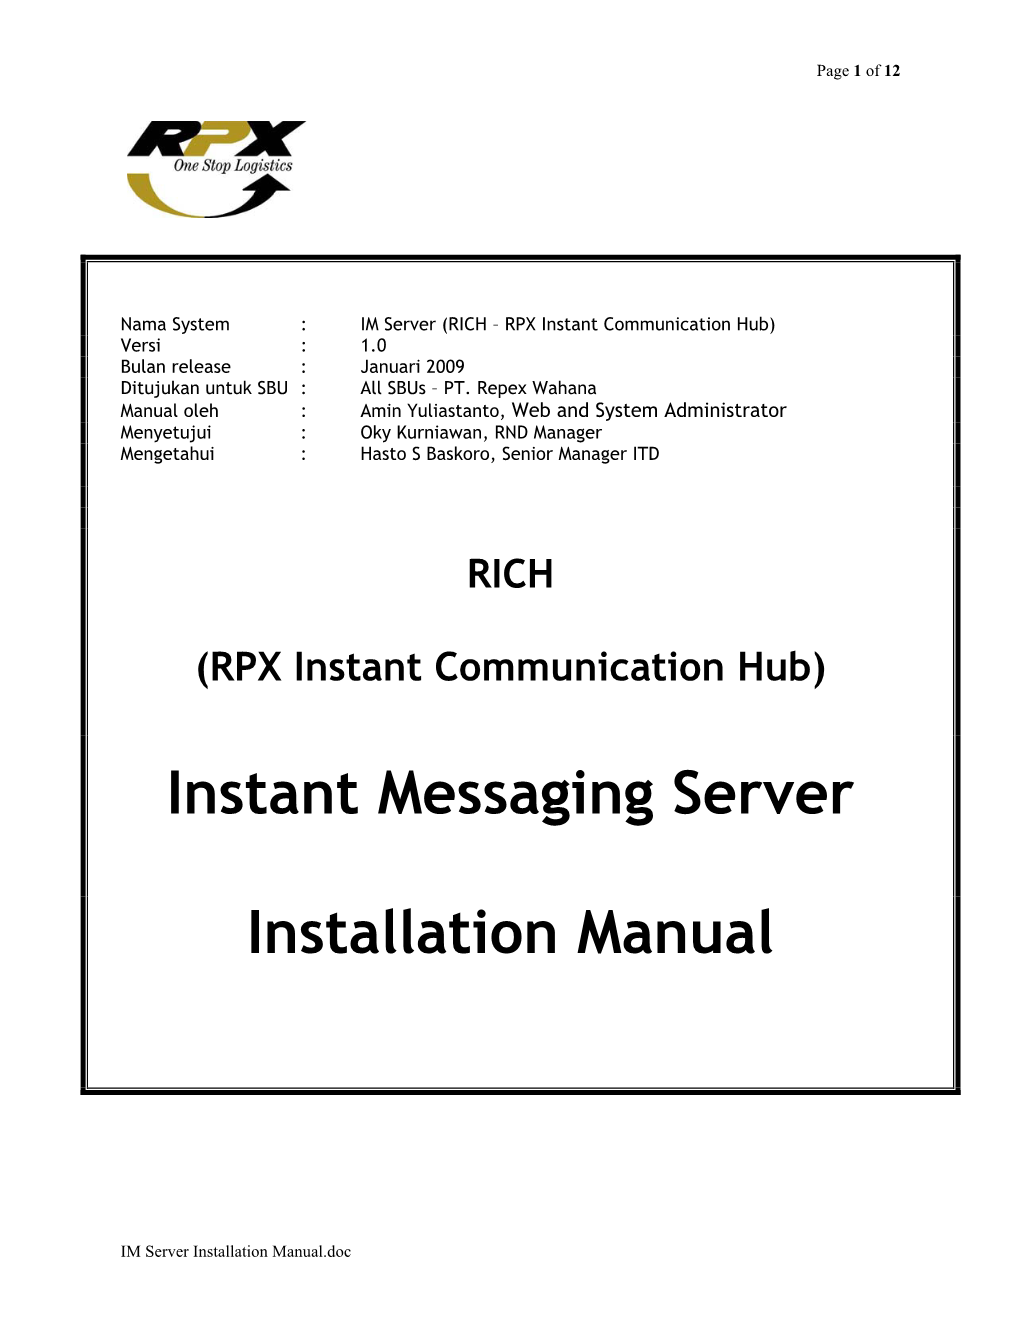 Instant Messaging Server Installation Manual